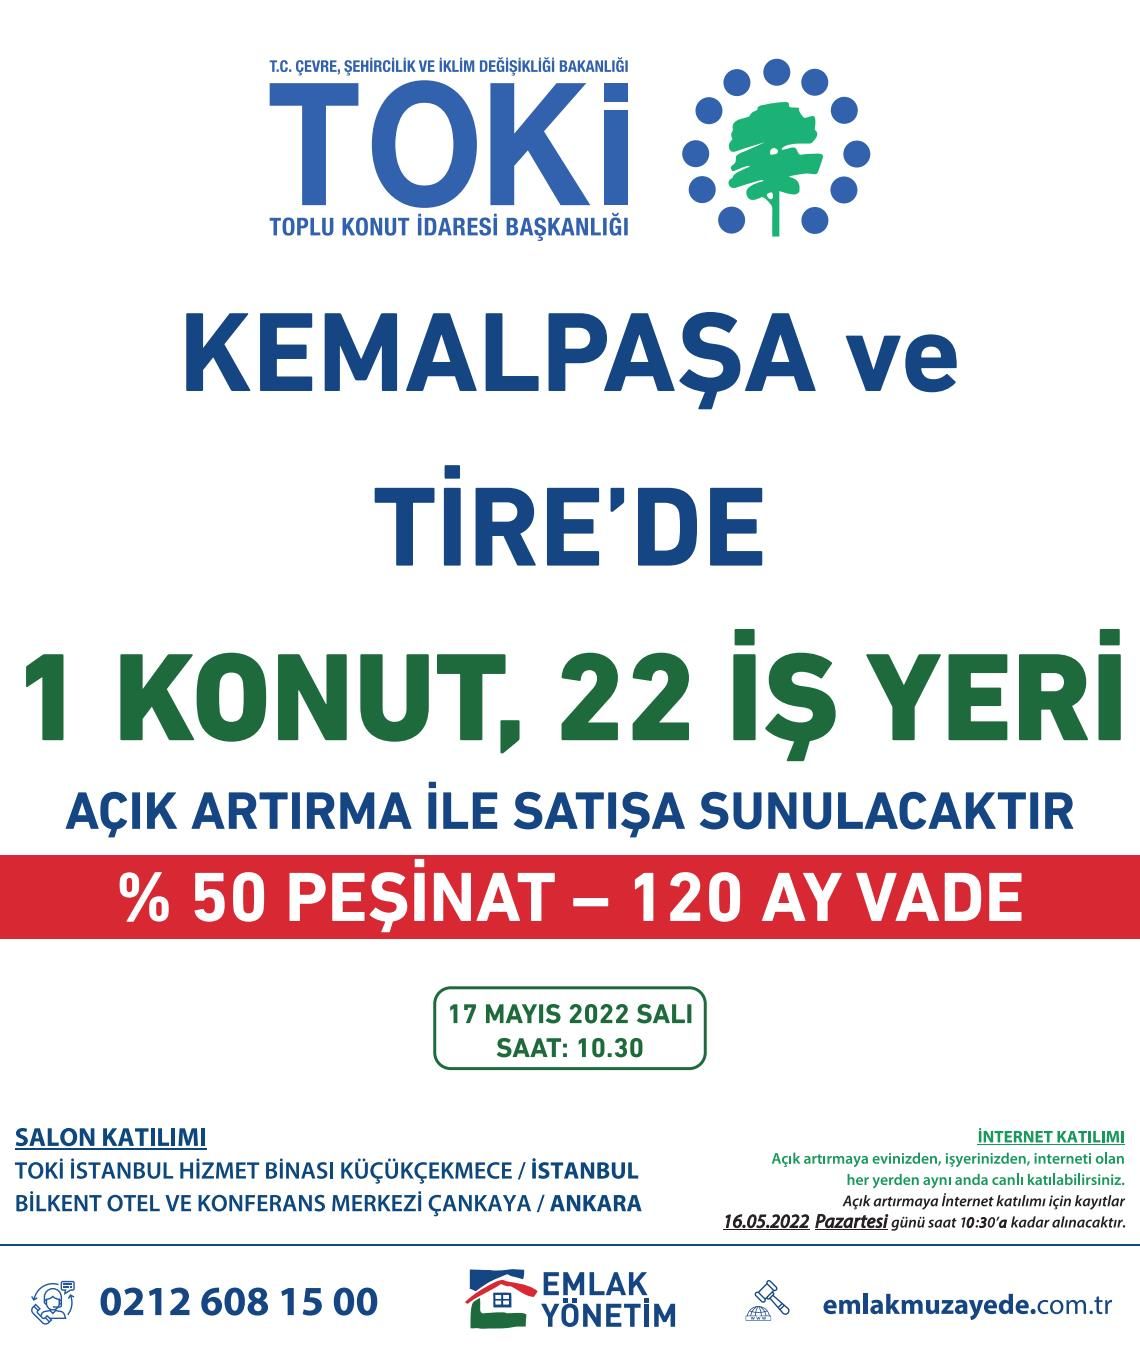 TOKİ, İzmir'in Kemalpaşa ve Tire ilçelerinde 1 konut ve 22 iş yerini açık artırma ile satacak